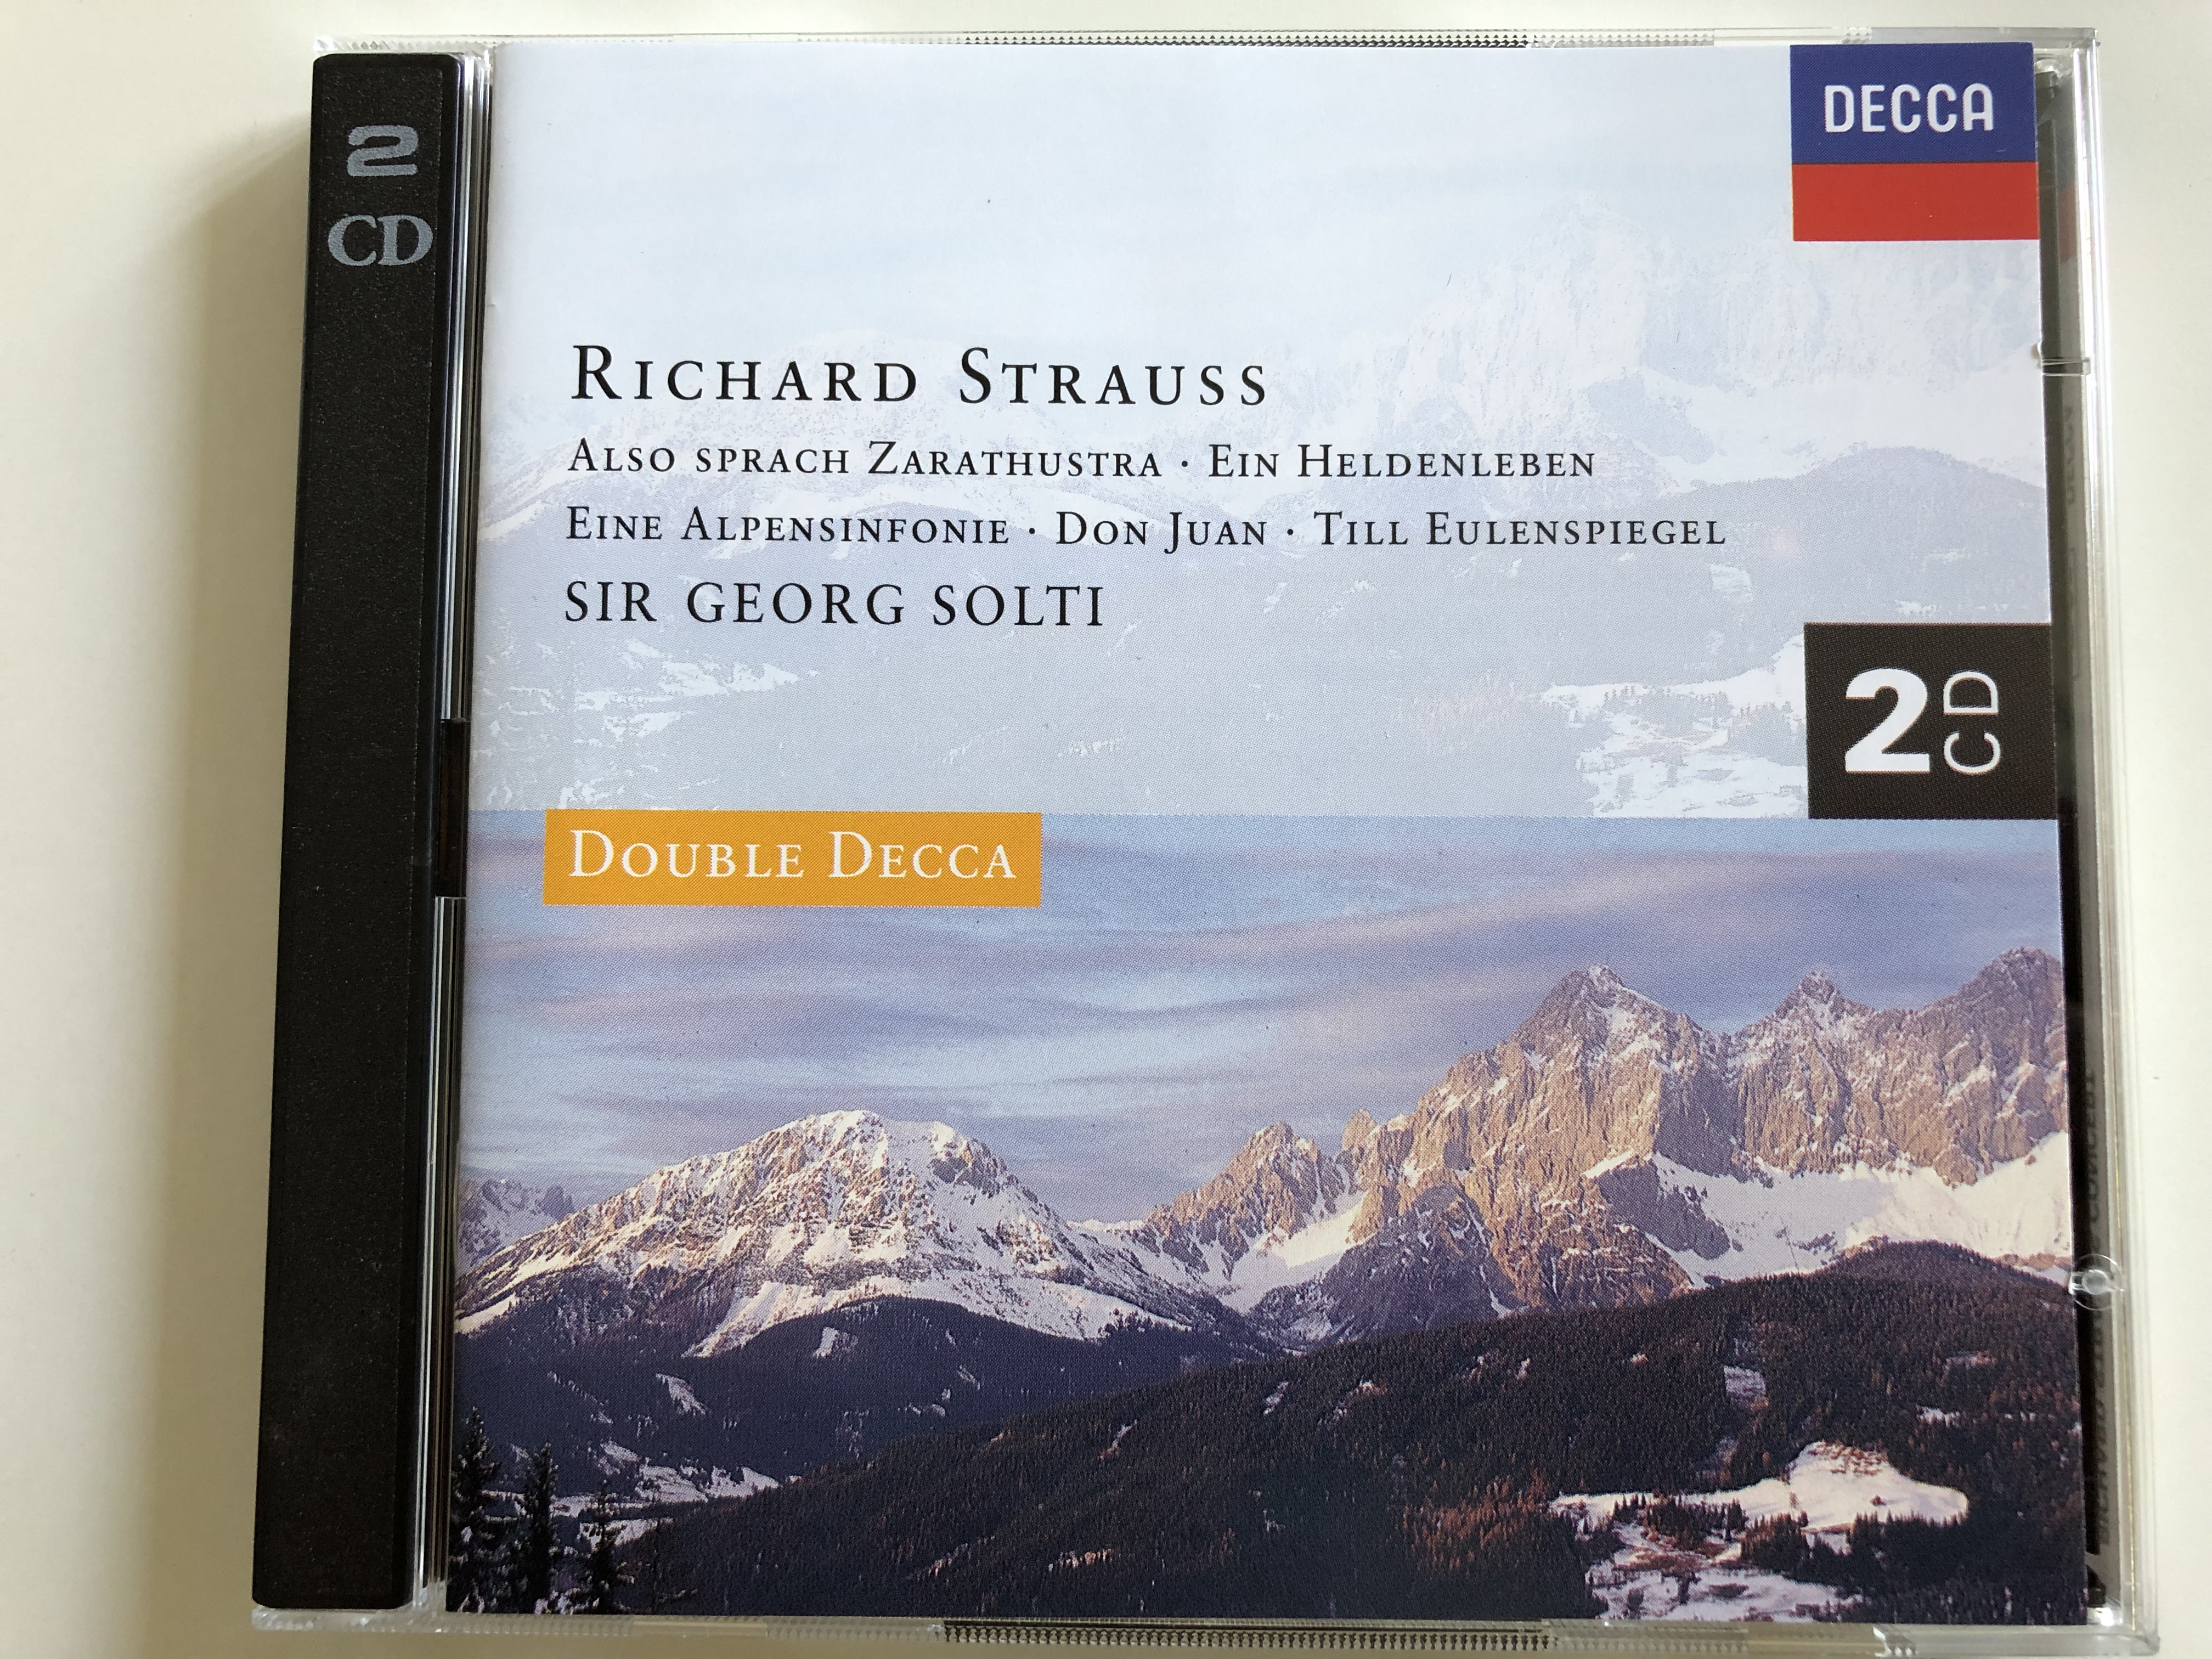 richard-strauss-also-sprach-zarathustra-ein-heldenleben-eine-alpensinfonie-don-juan-till-eulenspiegel-conducted-by-sir-georg-solti-double-decca-2-cd-audio-cd-set-1994-1-.jpg